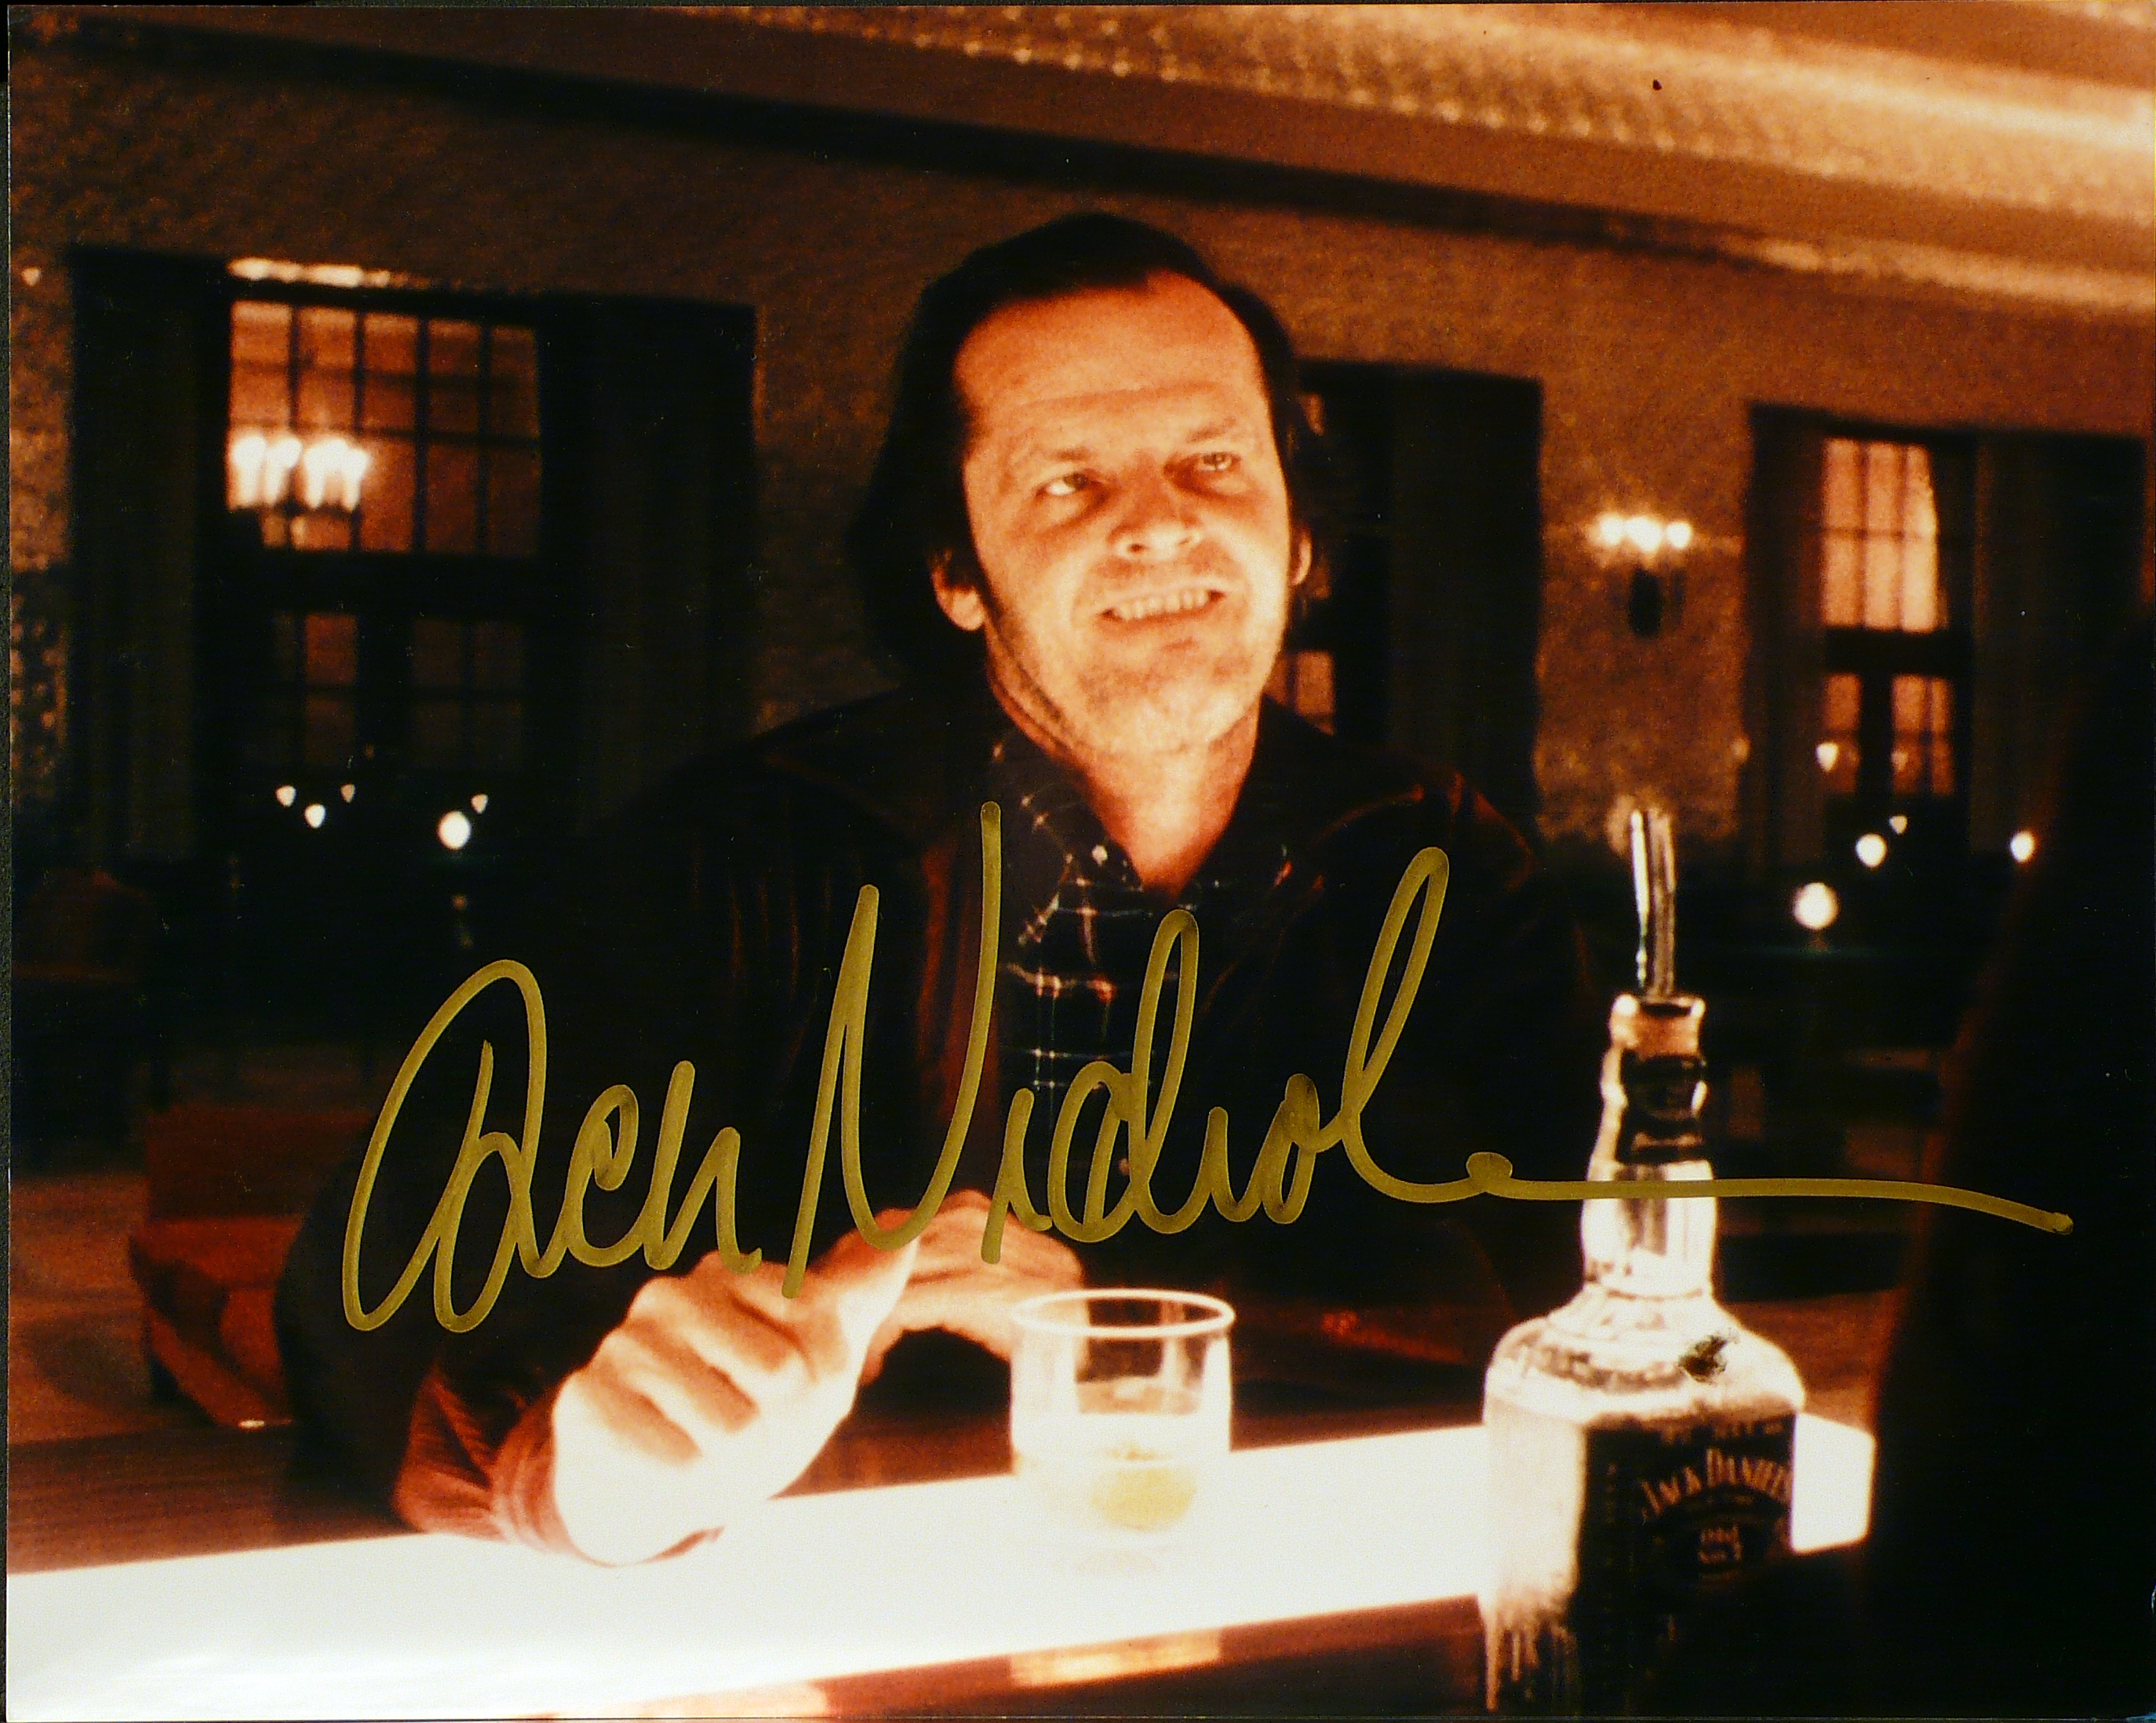 The Shining – Lobby card con autografo di Jack Nicholson